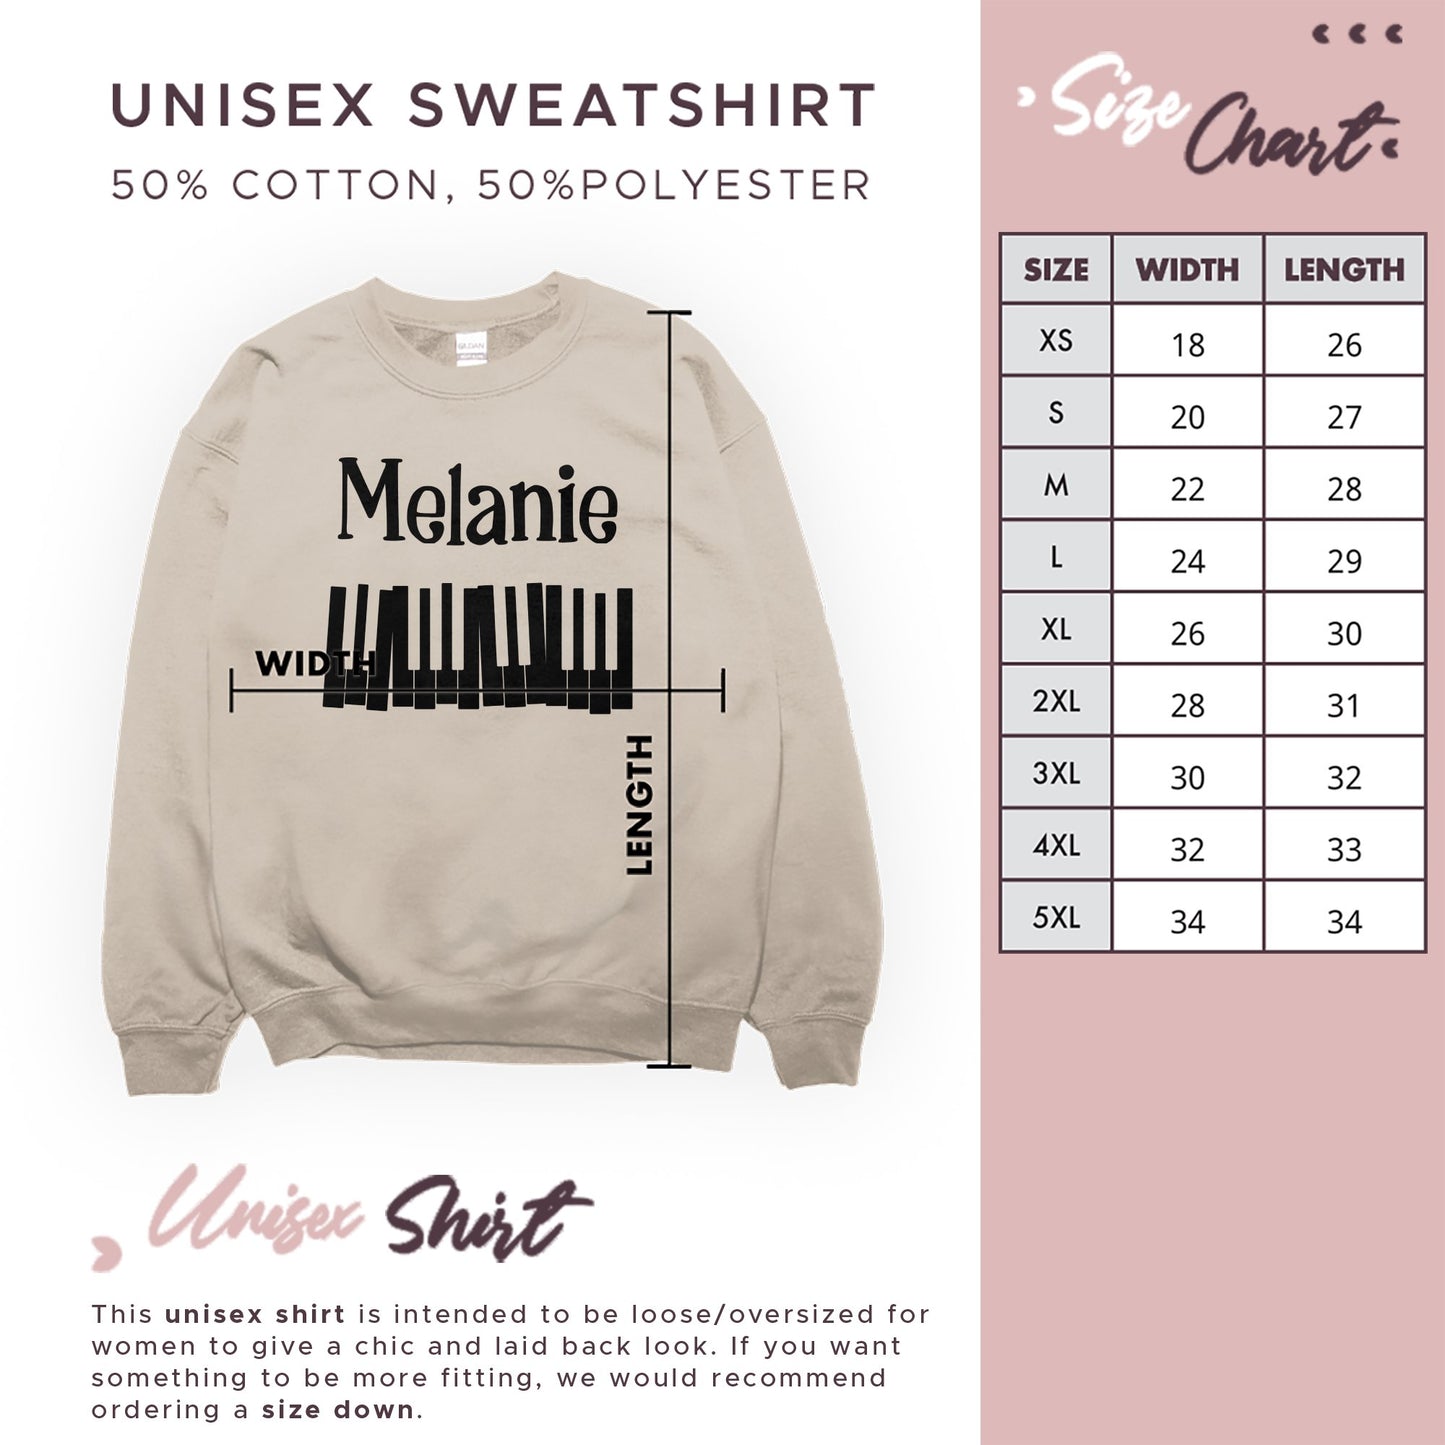 Custom Name Music Sweatshirt, Personalized Piano T-Shirt, Piano Lesson Music Gifts, Music Birthday, Gift Music Teacher - Mardonyx Sweatshirt